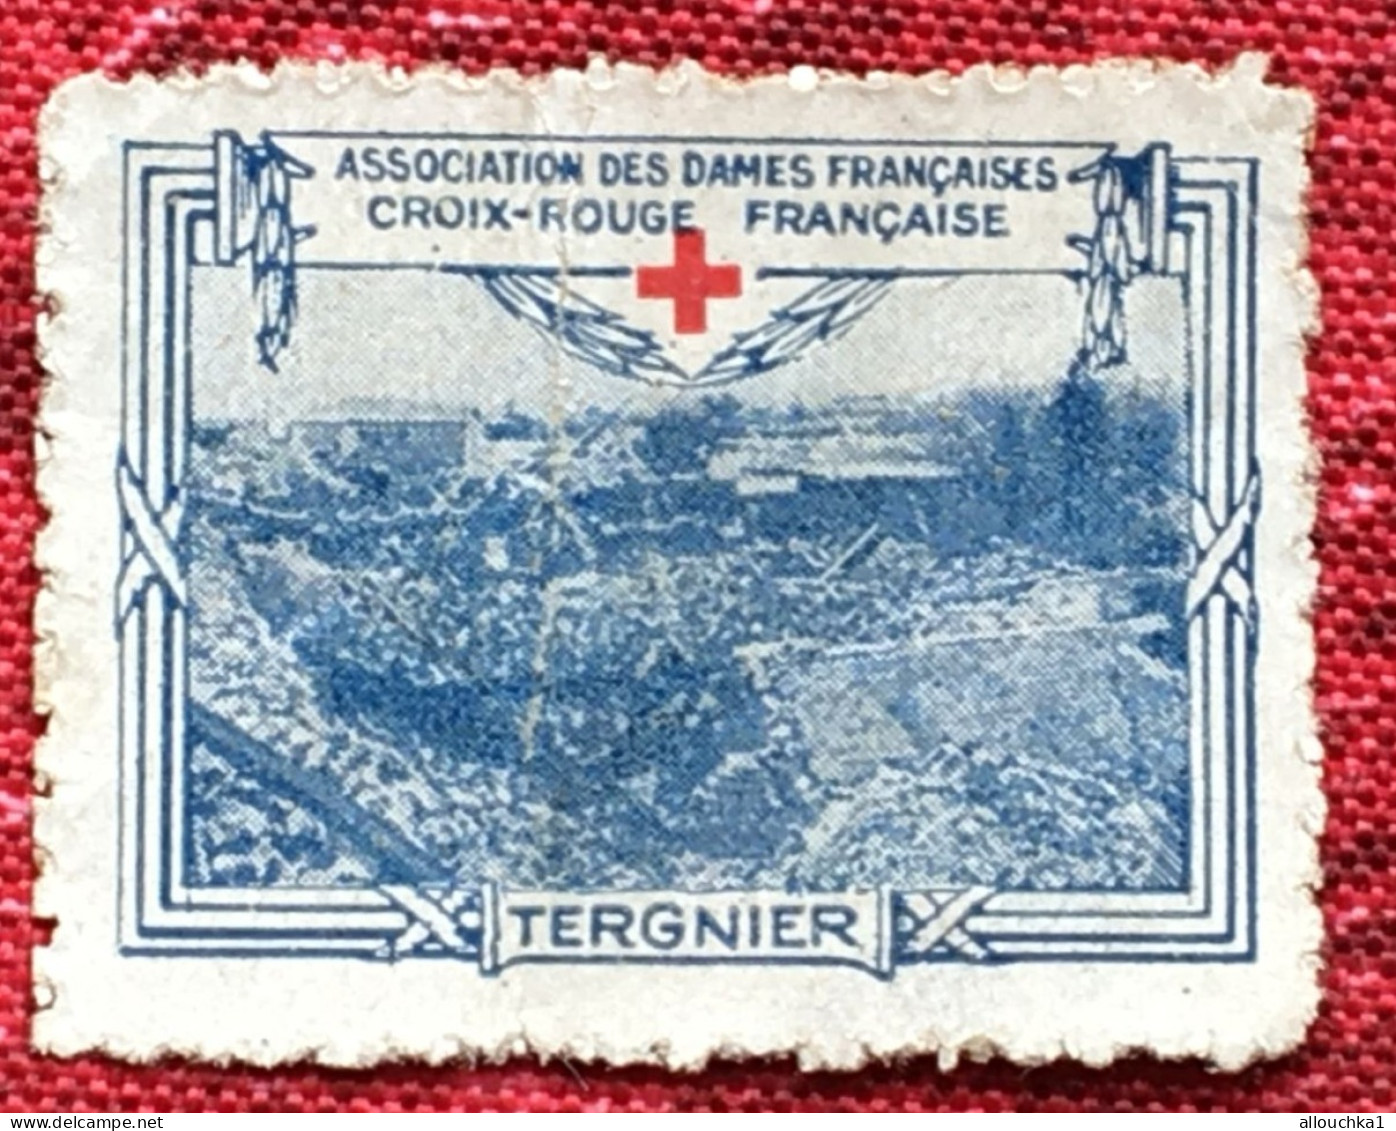 Croix Rouge Française Association Dames Françaises Tergnier -Red Cross-Timbre-Vignette-Erinnophilie-Stamp-Sticker-Viñeta - Croix Rouge